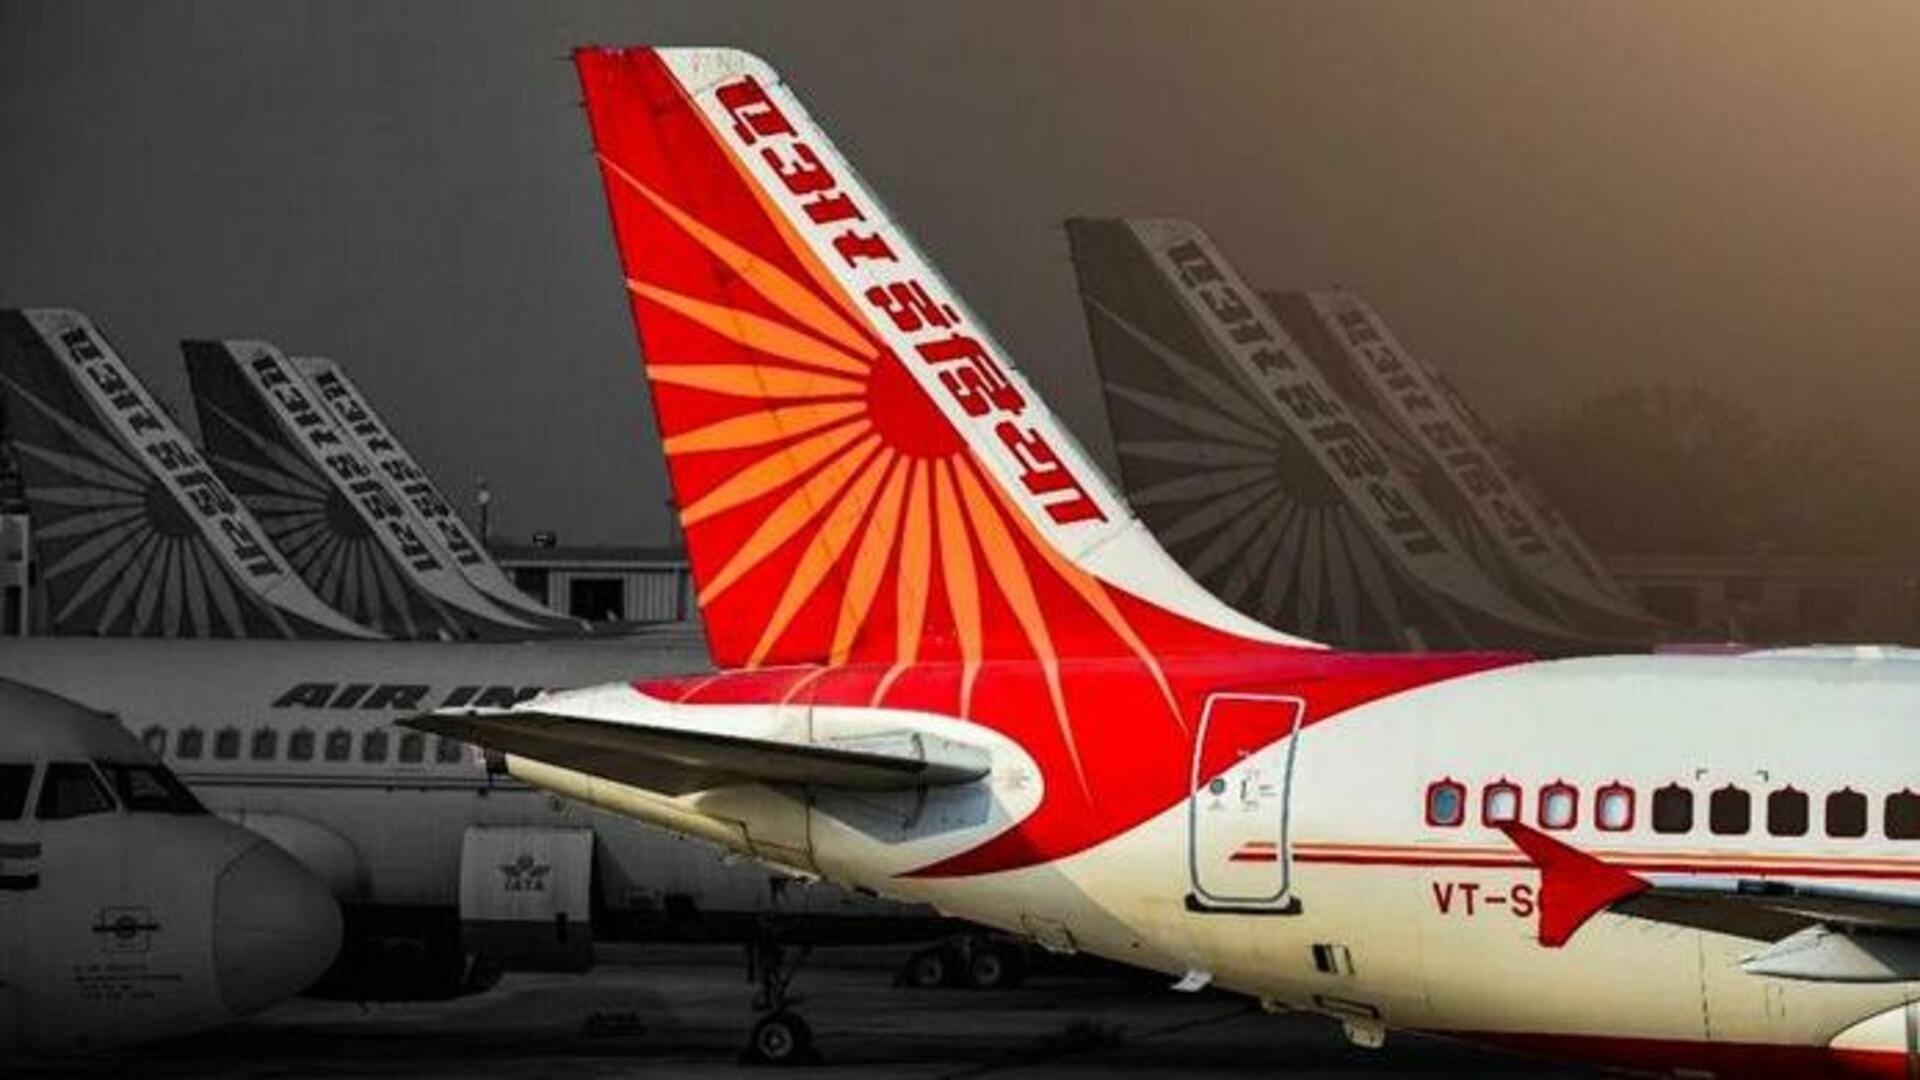 एयर इंडिया के लिए एयरबस से 250 विमान खरीदेगा टाटा समूह